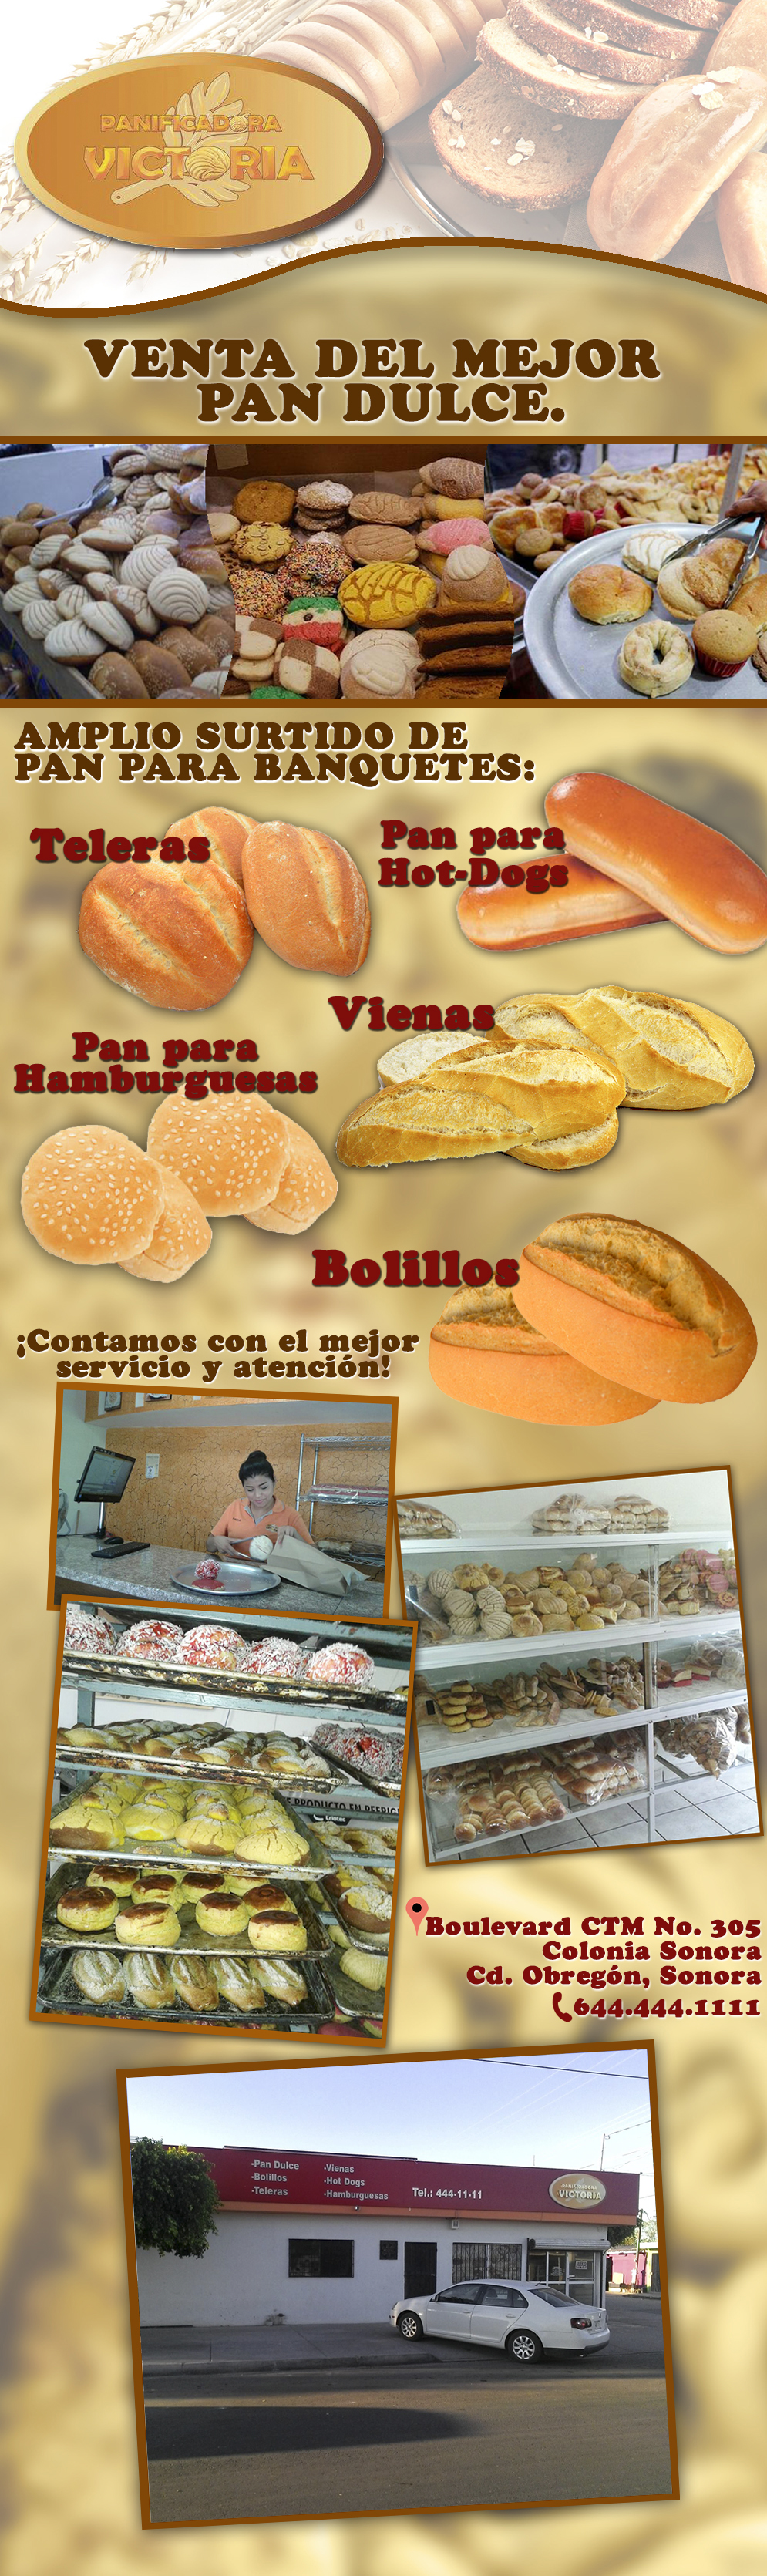 Panificadora Victoria-Amplio surtido de pan para banquetes: pan para Hot Dogs, Teleras, Vienas, pan para Hamburguesas y Bollitos. Venta de Pan Dulce.     